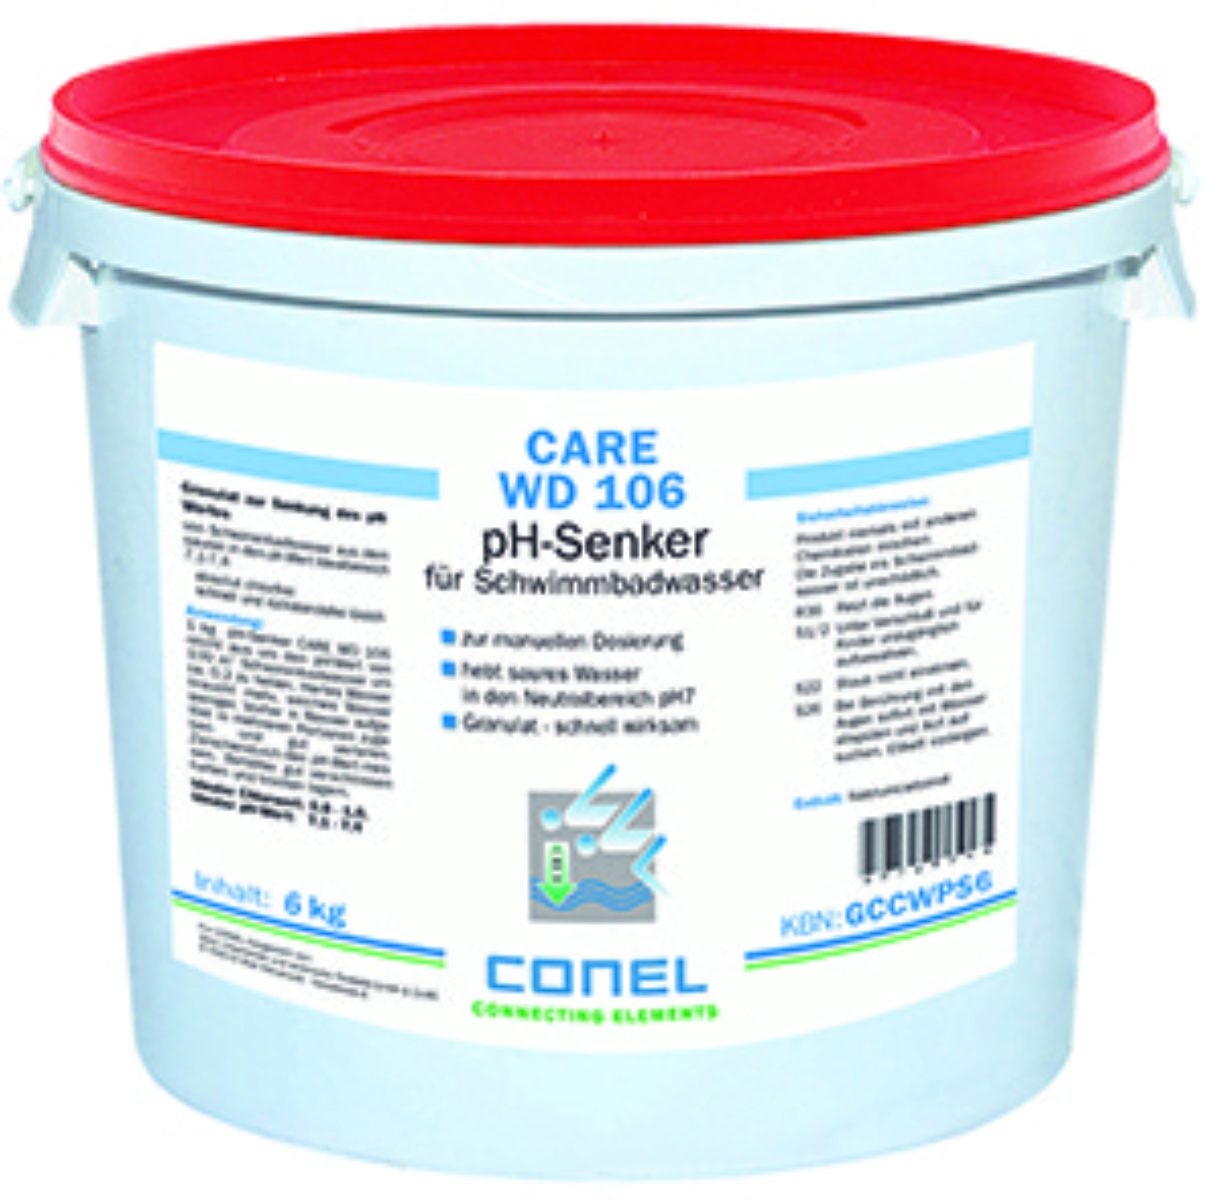 pH-Senker Granulat CARE-GCCWPS6-